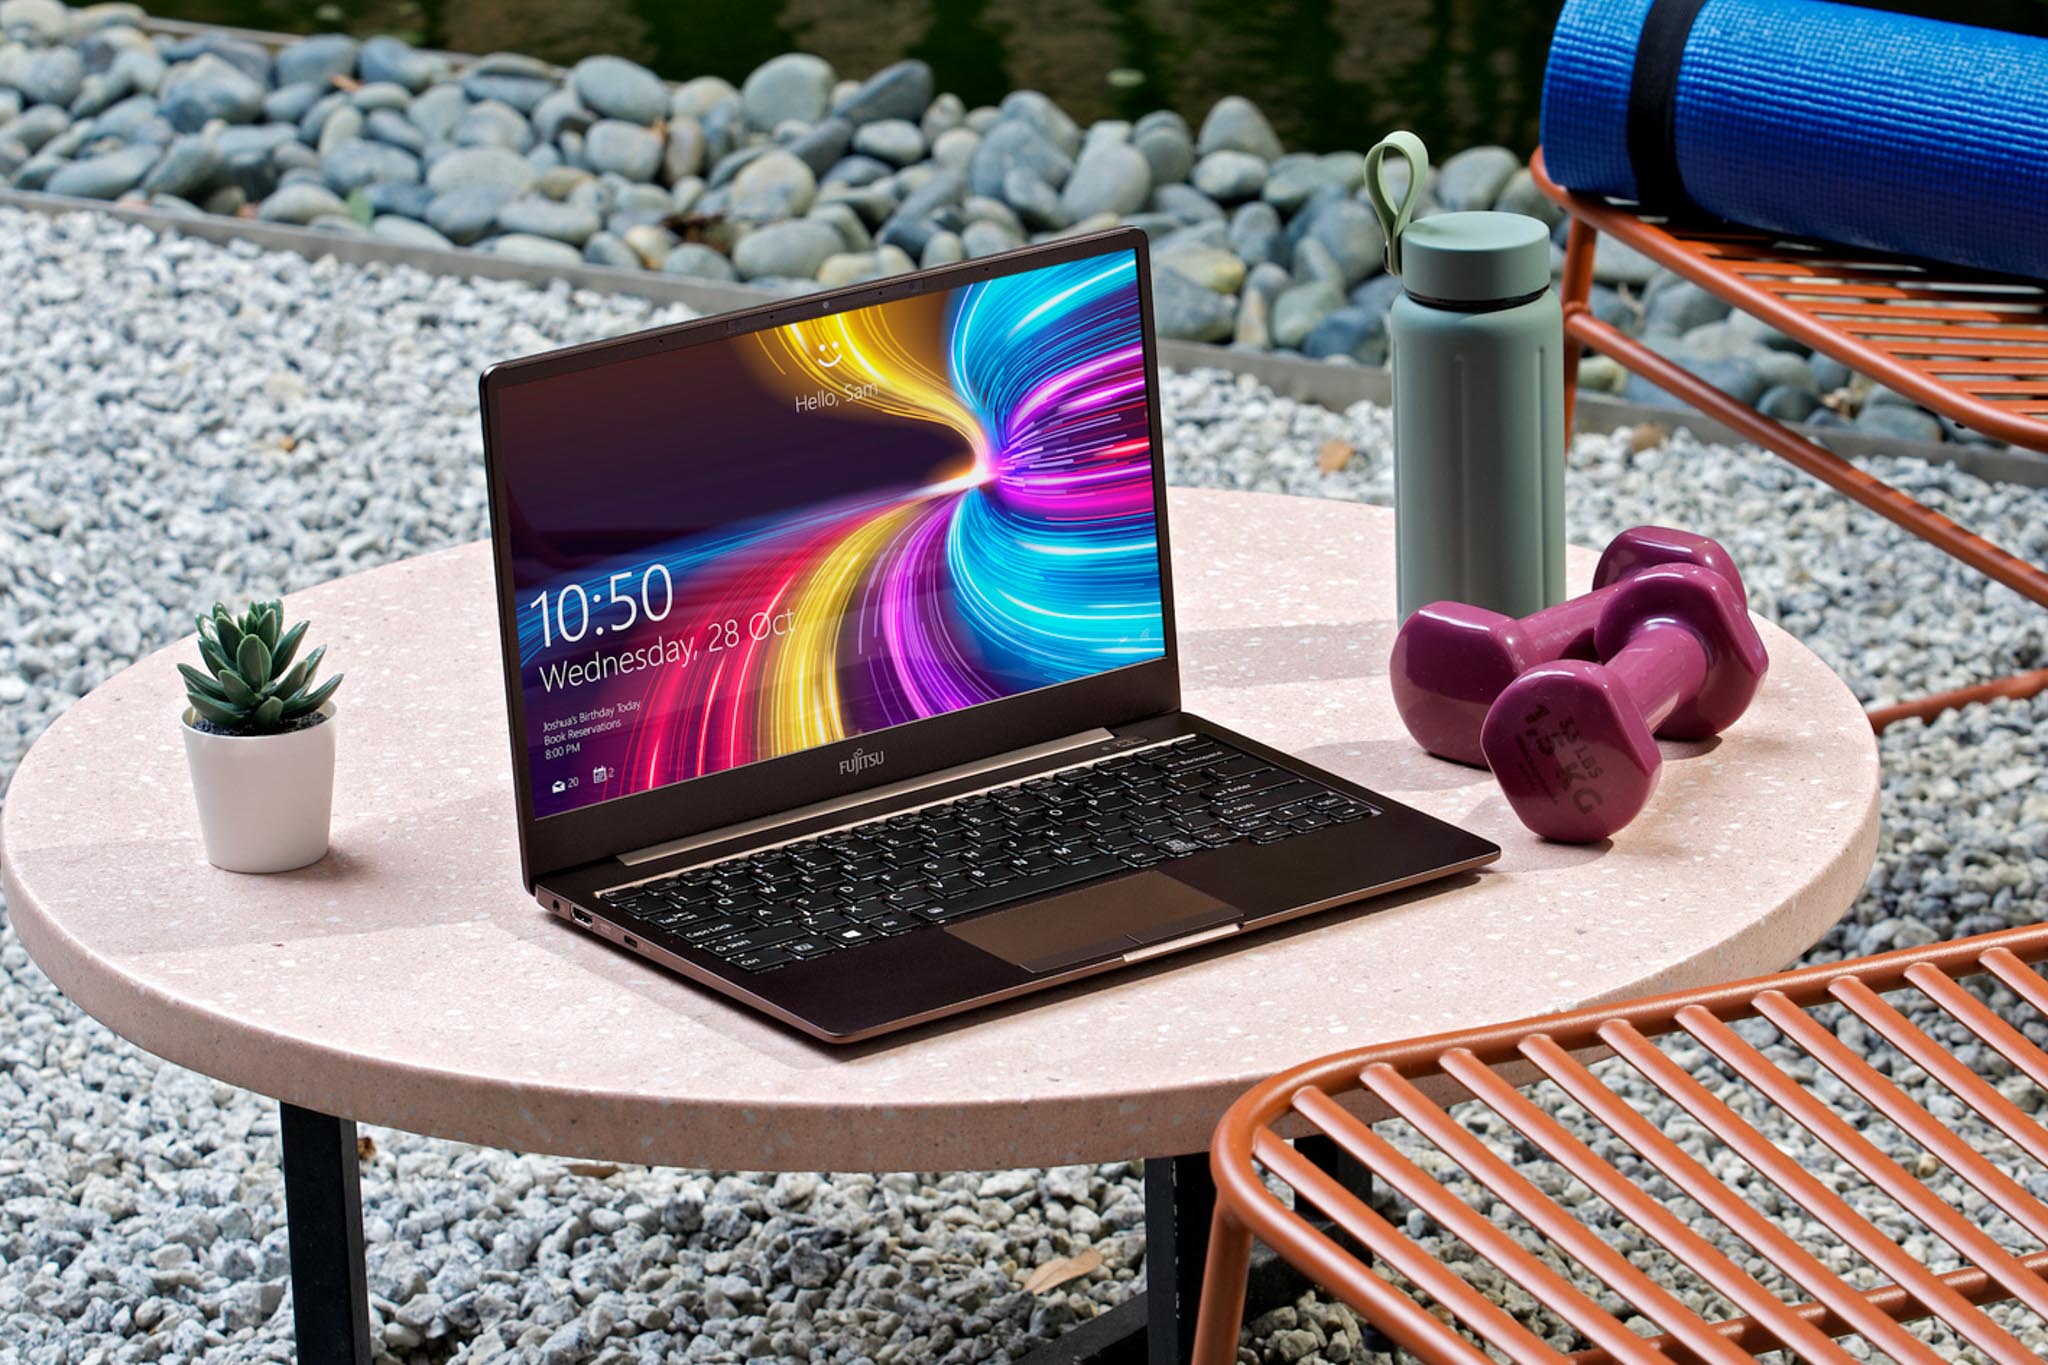 Ra mắt laptop Fujitsu CH siêu nhẹ hiệu năng cao, mang đến trải nghiệm di động hoàn hảo